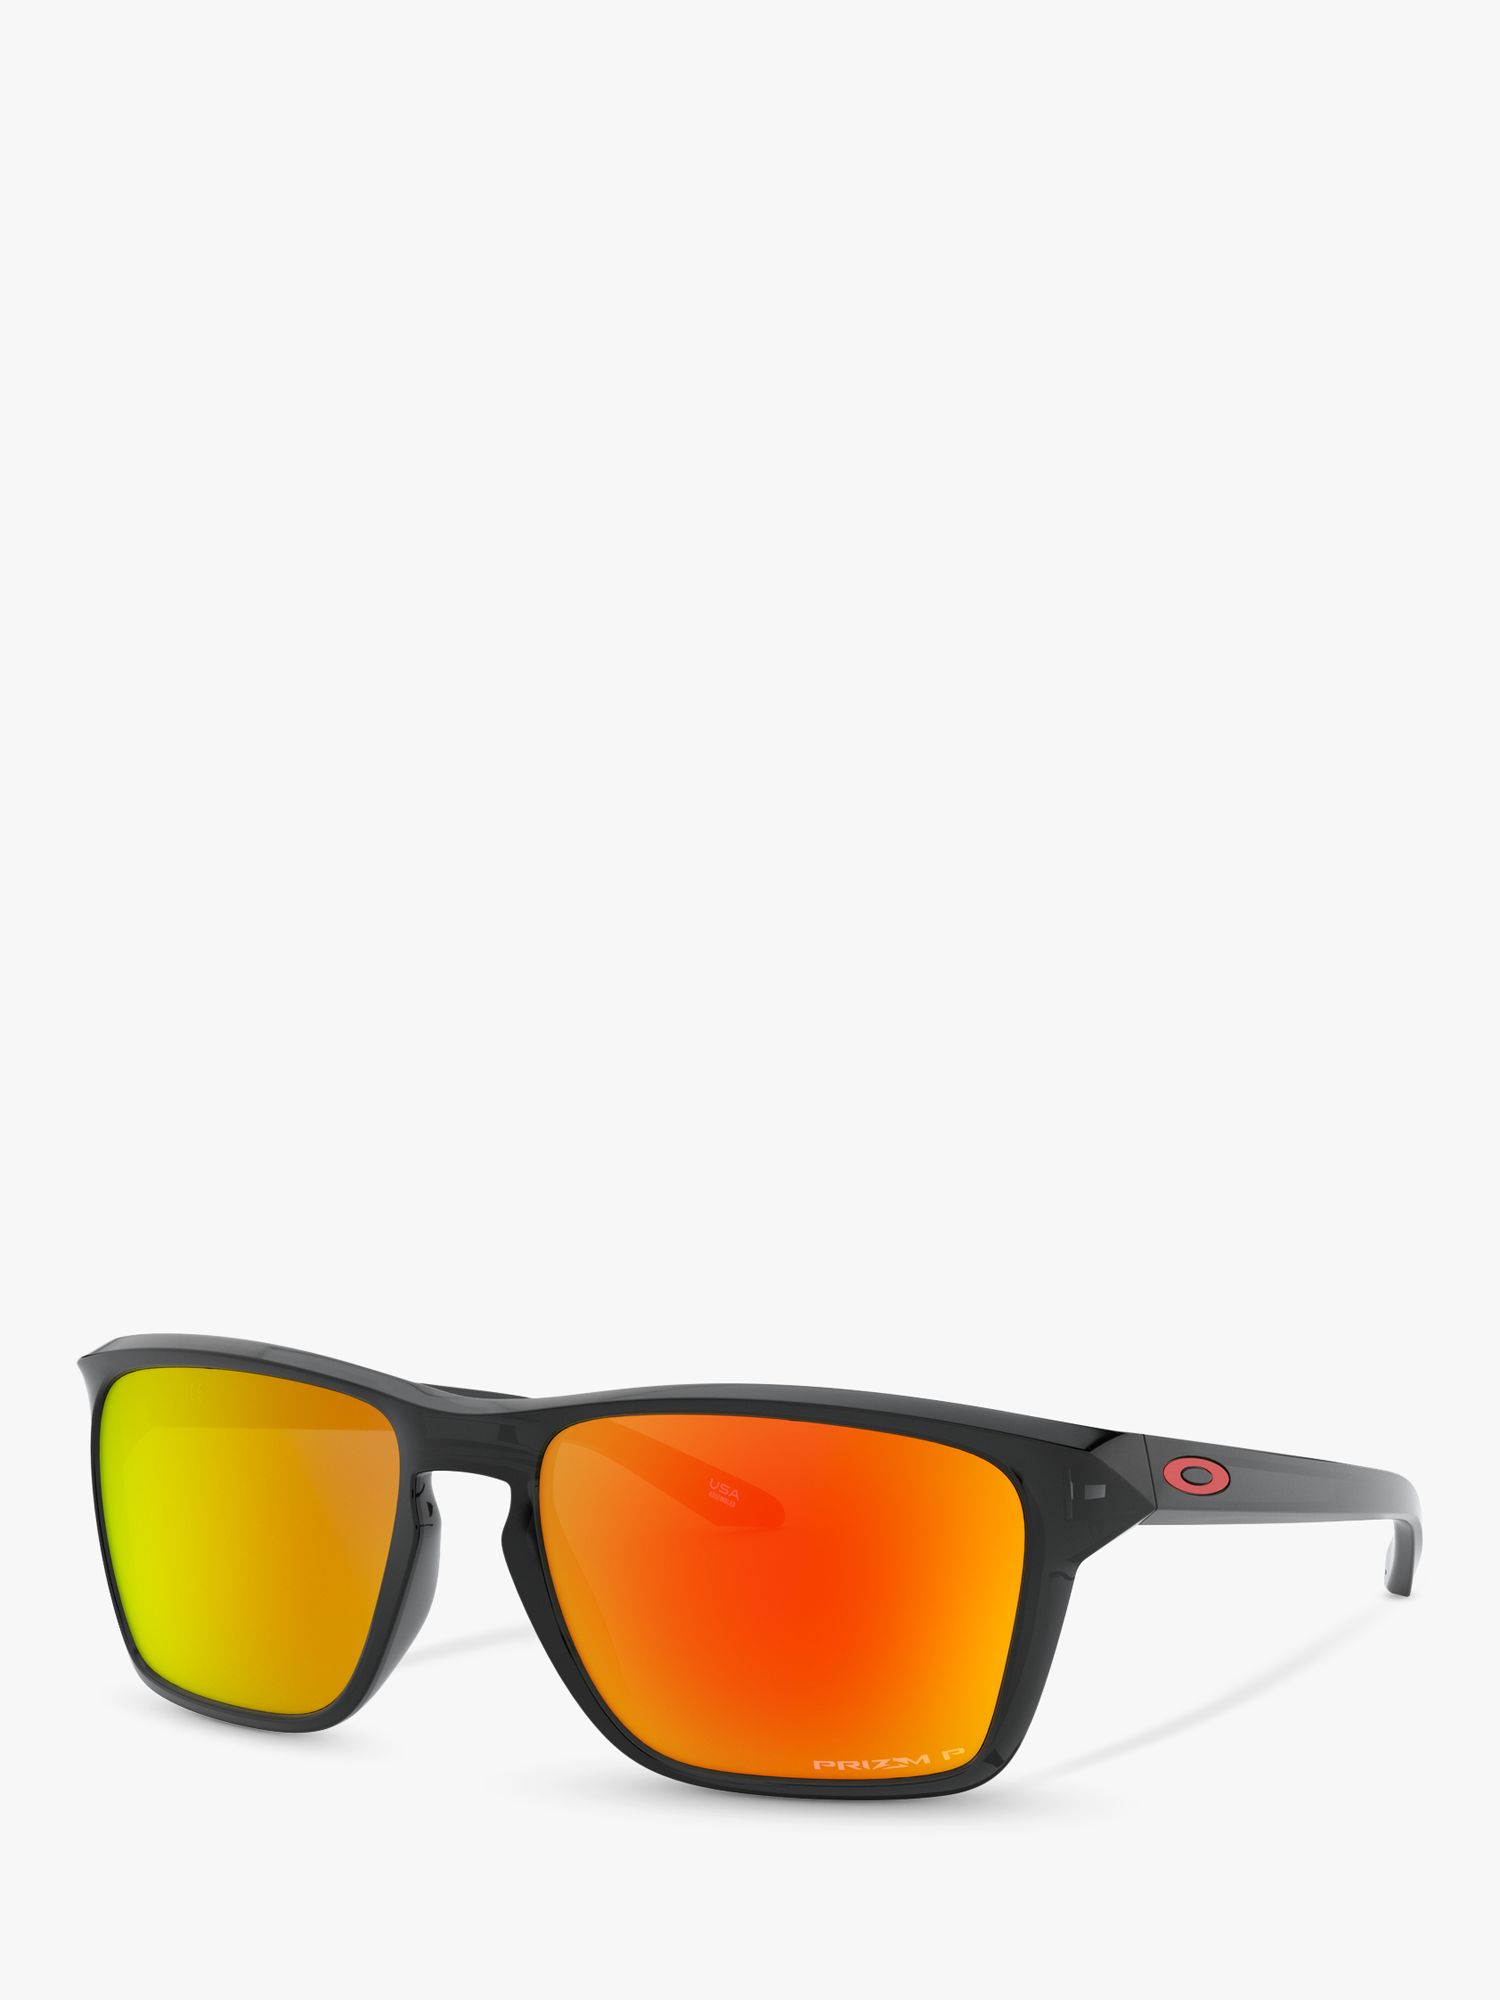 поляризационные солнцезащитные очки oo9448 57 sylas oakley Мужские поляризационные прямоугольные солнцезащитные очки Oakley OO9448 Sylas Prizm, черные чернила/оранжевый зеркальный цвет